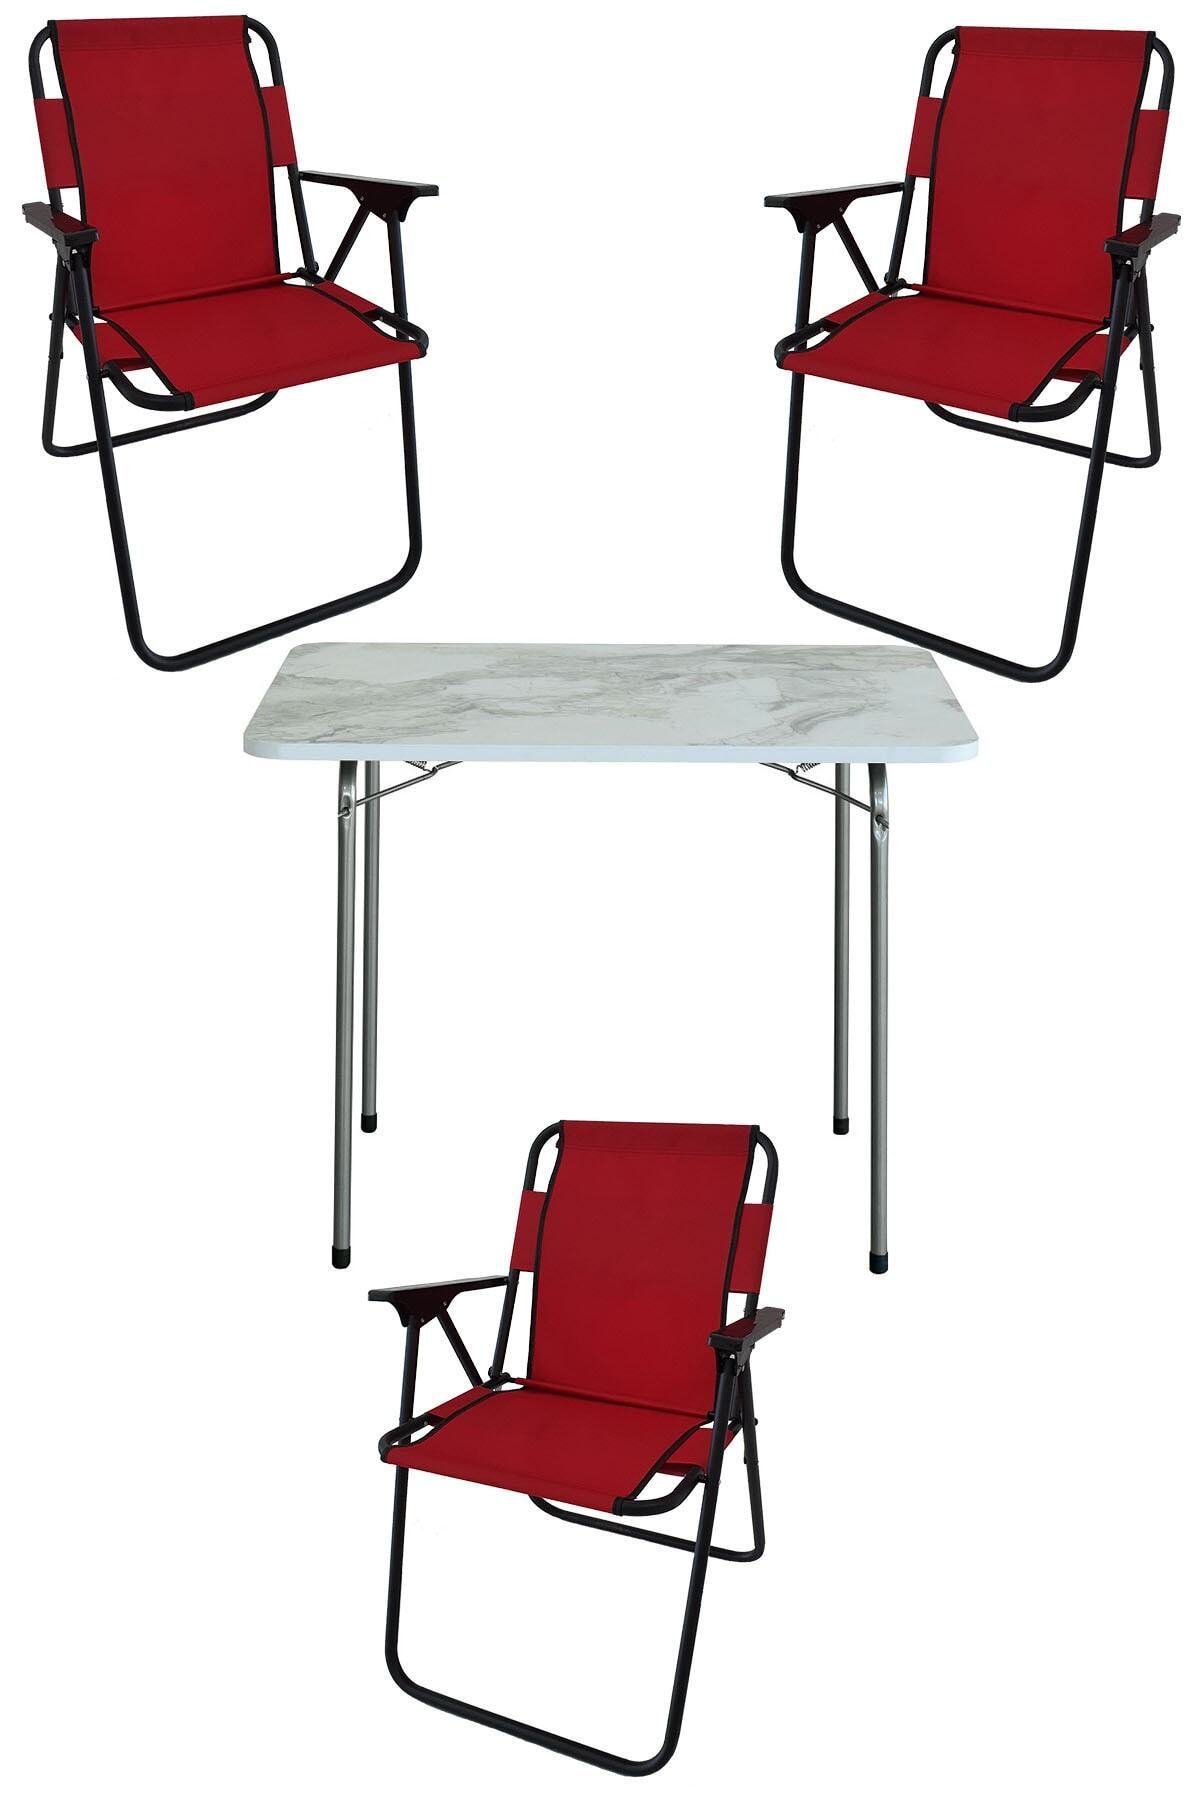 Bofigo 60x80 Çam Desenli Katlanır Masa + 3 Adet Katlanır Sandalye Kamp Seti Bahçe Takımı Kırmızı